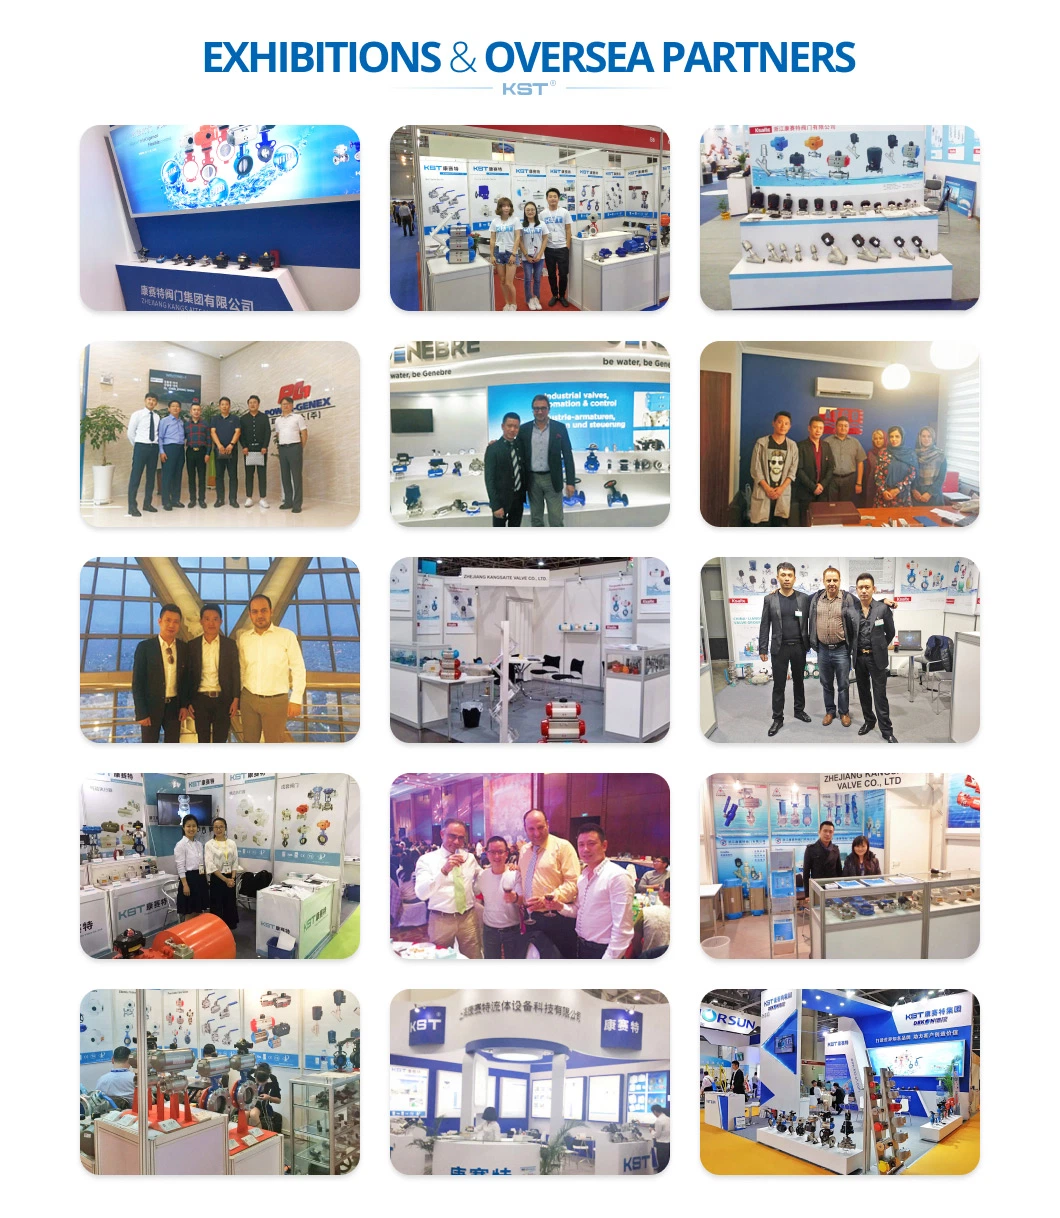 2.5 - 8 Bar Pneumatuc Linear Valve Actuator Pneumatic Manufacture in China